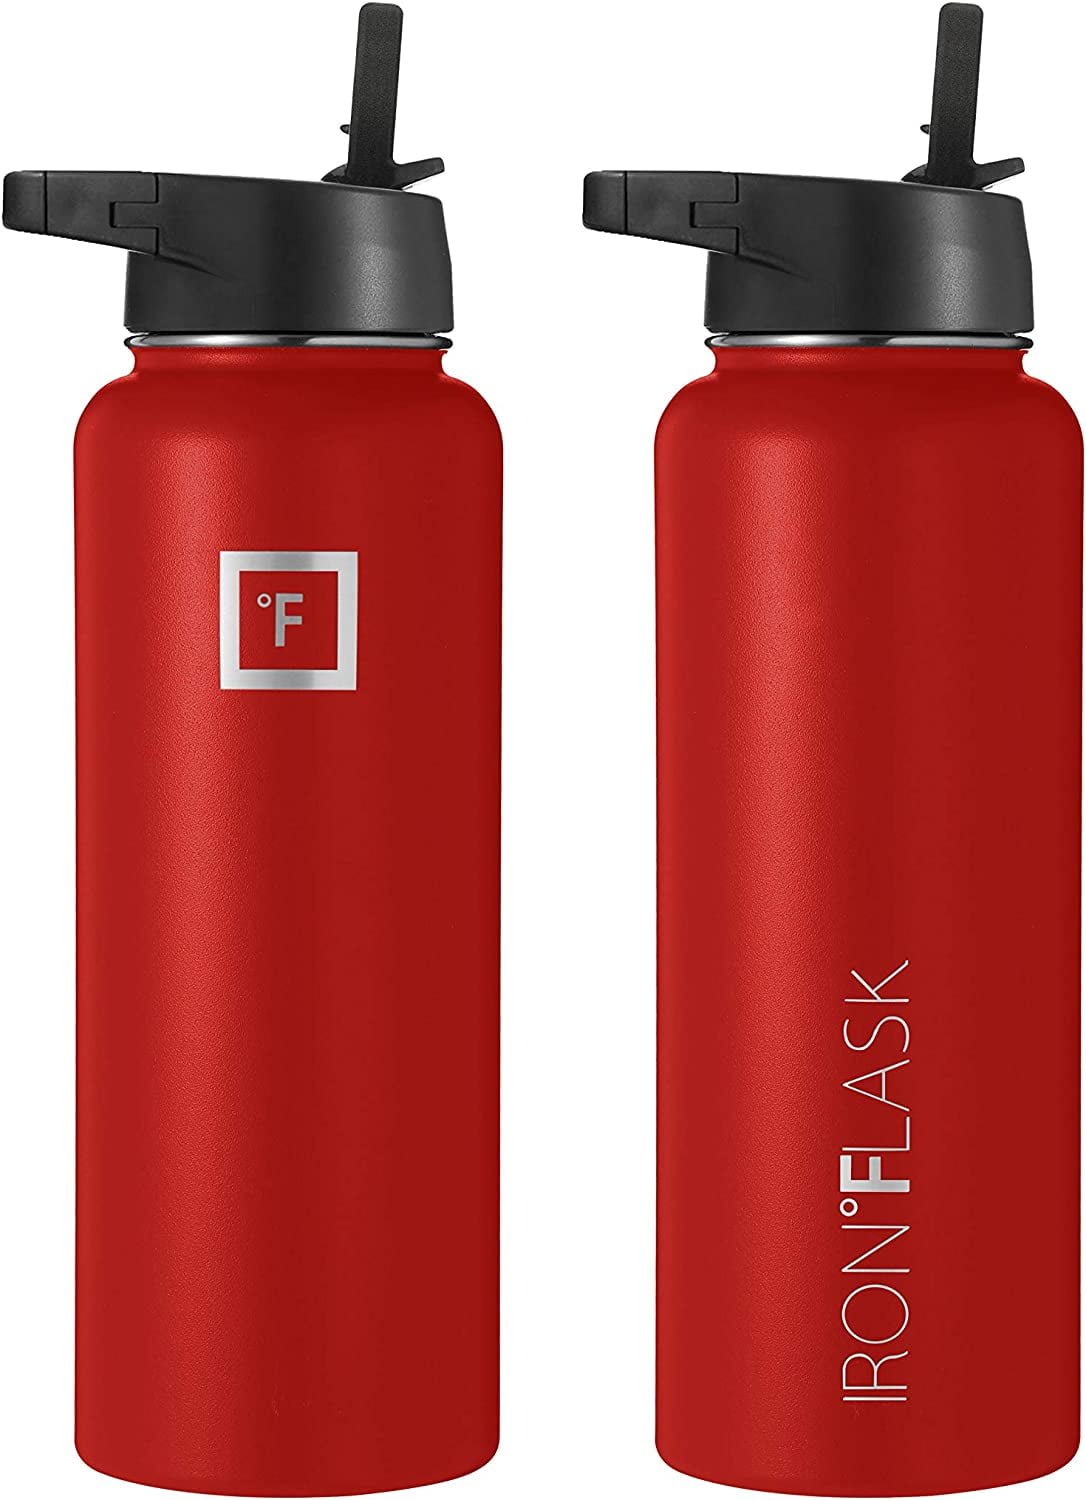 IRON FLASK Sports Water Bottle - 40 Oz, 3 Lids (Spout Lid), Leak Proof, A6